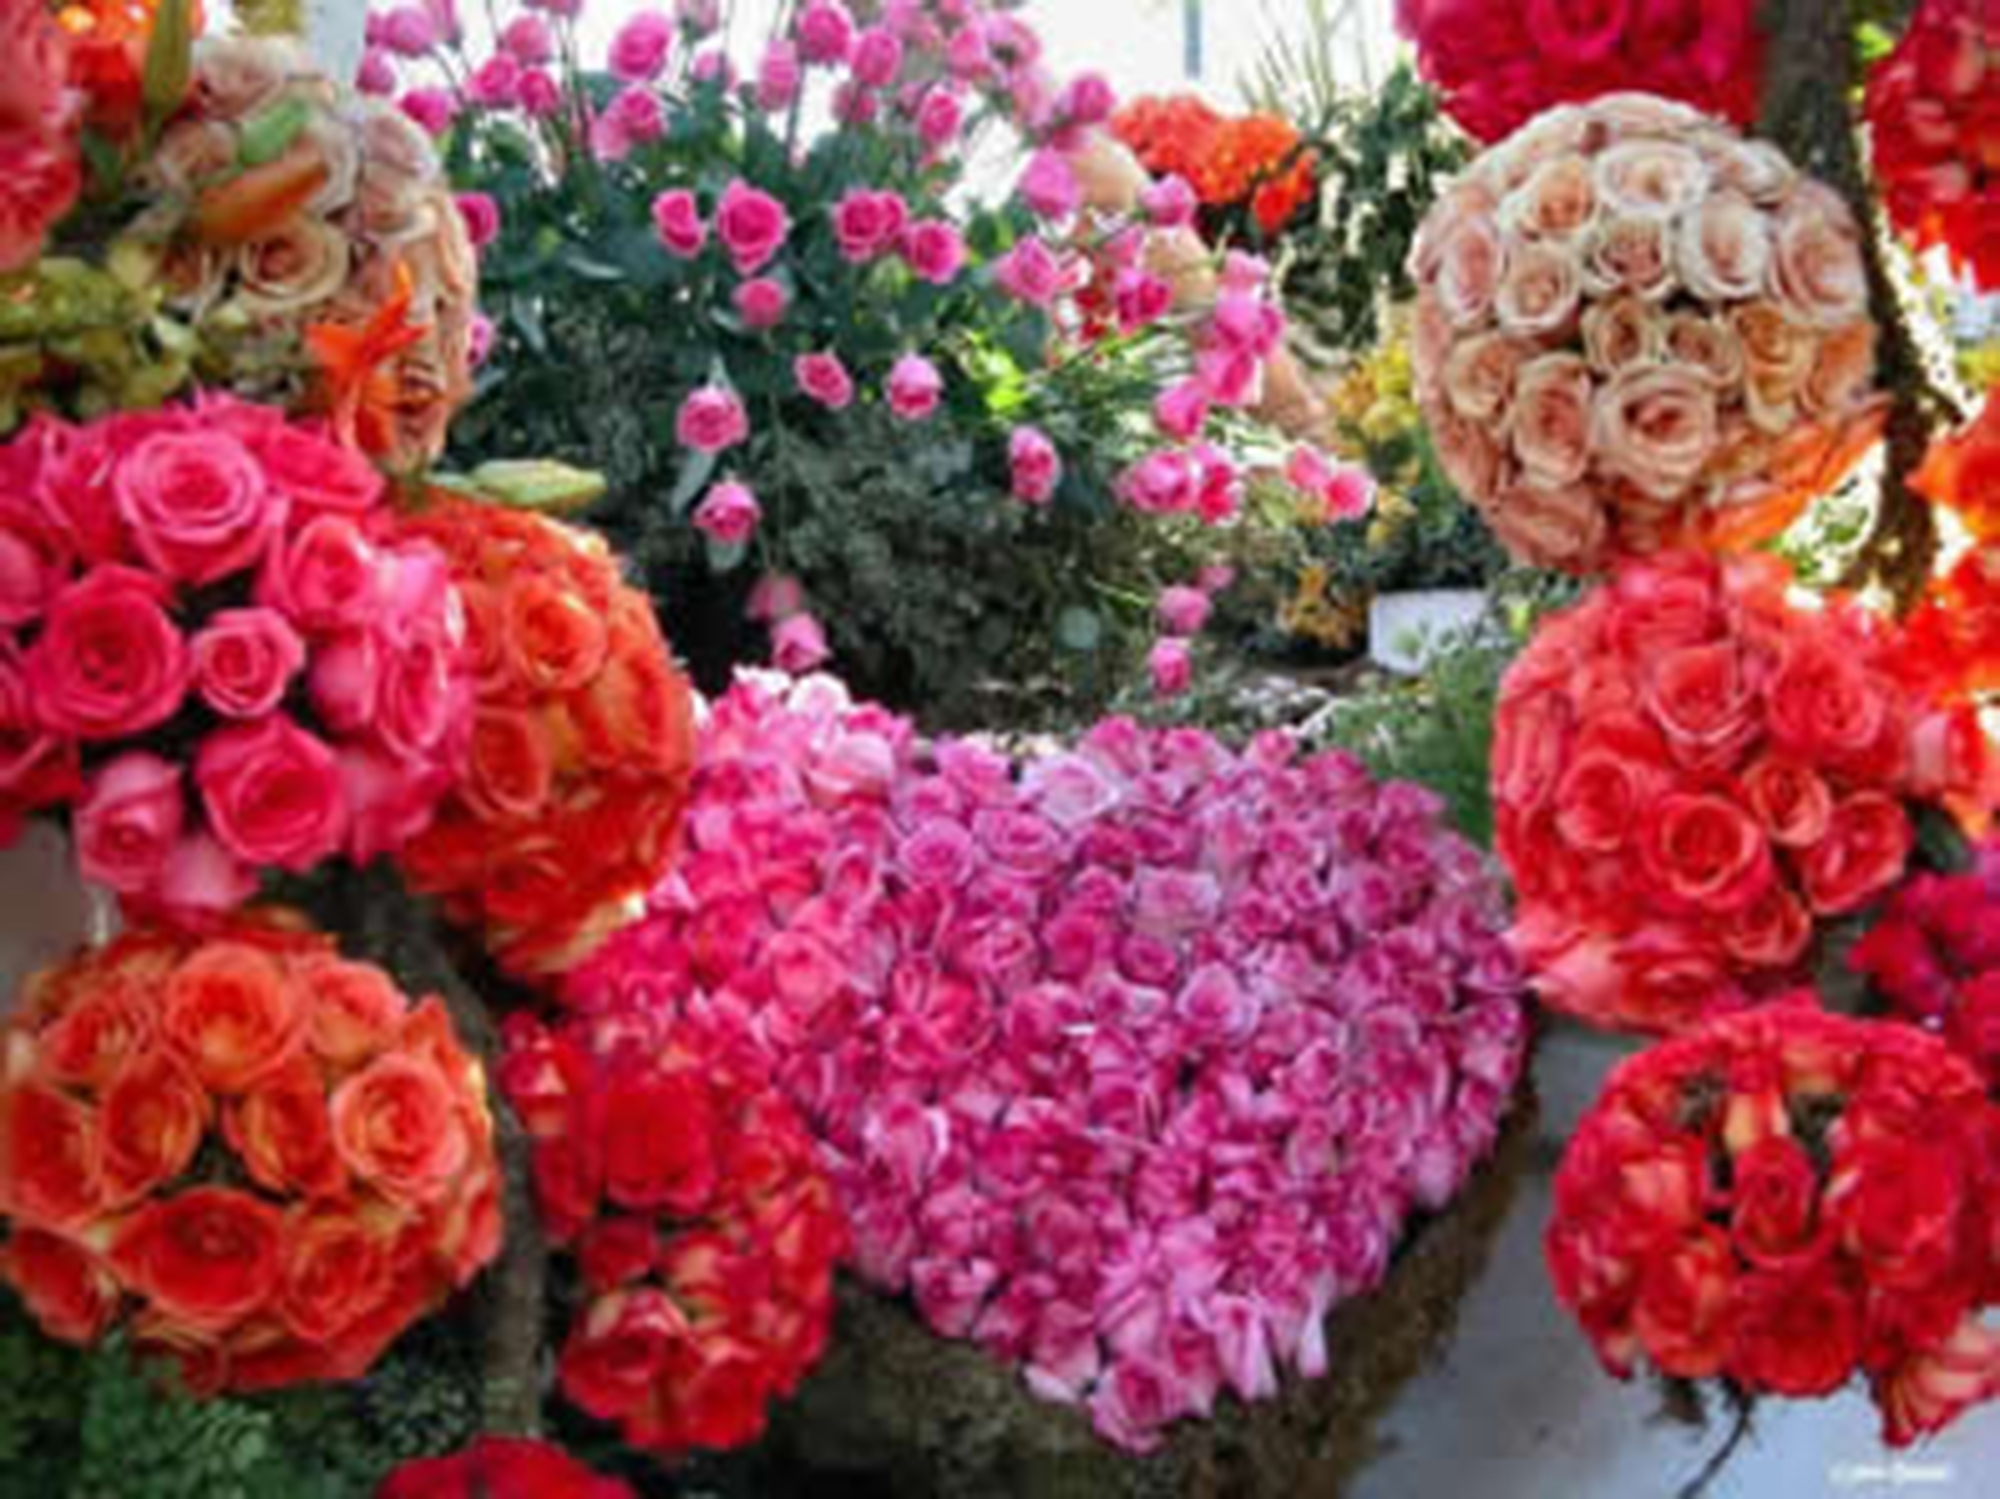 Dia das Mães aquece o mercado nacional de flores